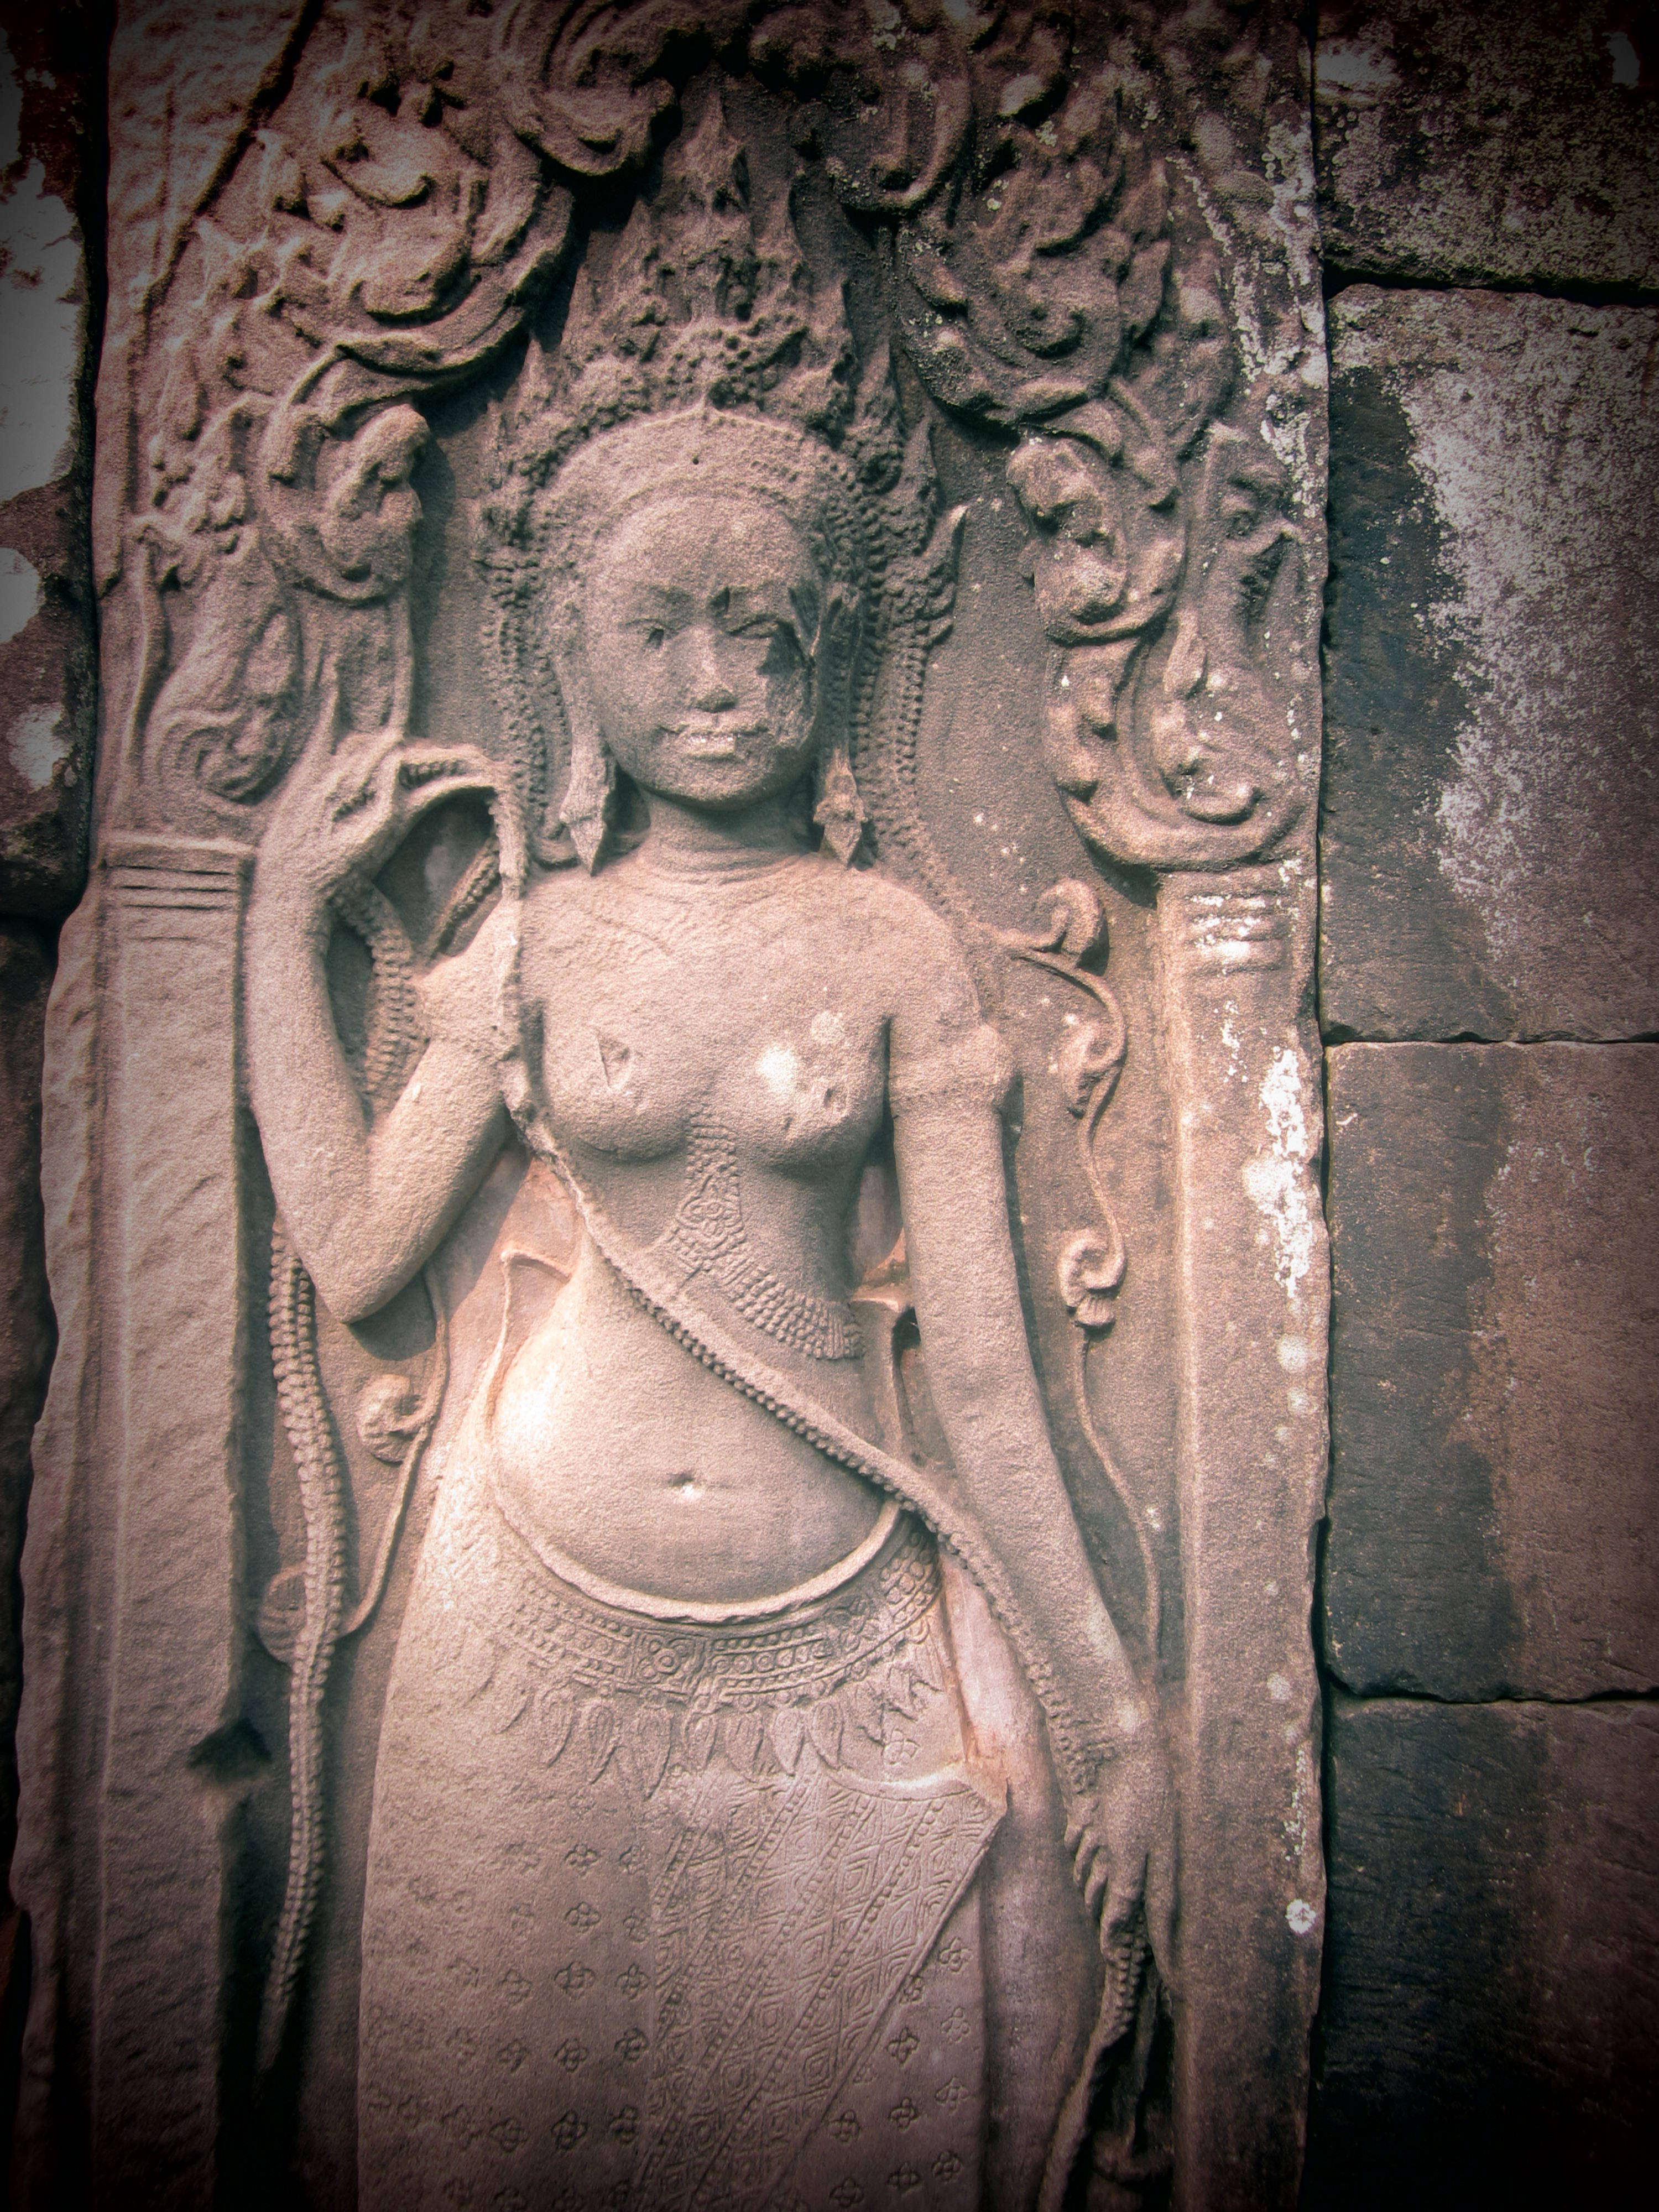 The gods of Angkor Cambodia